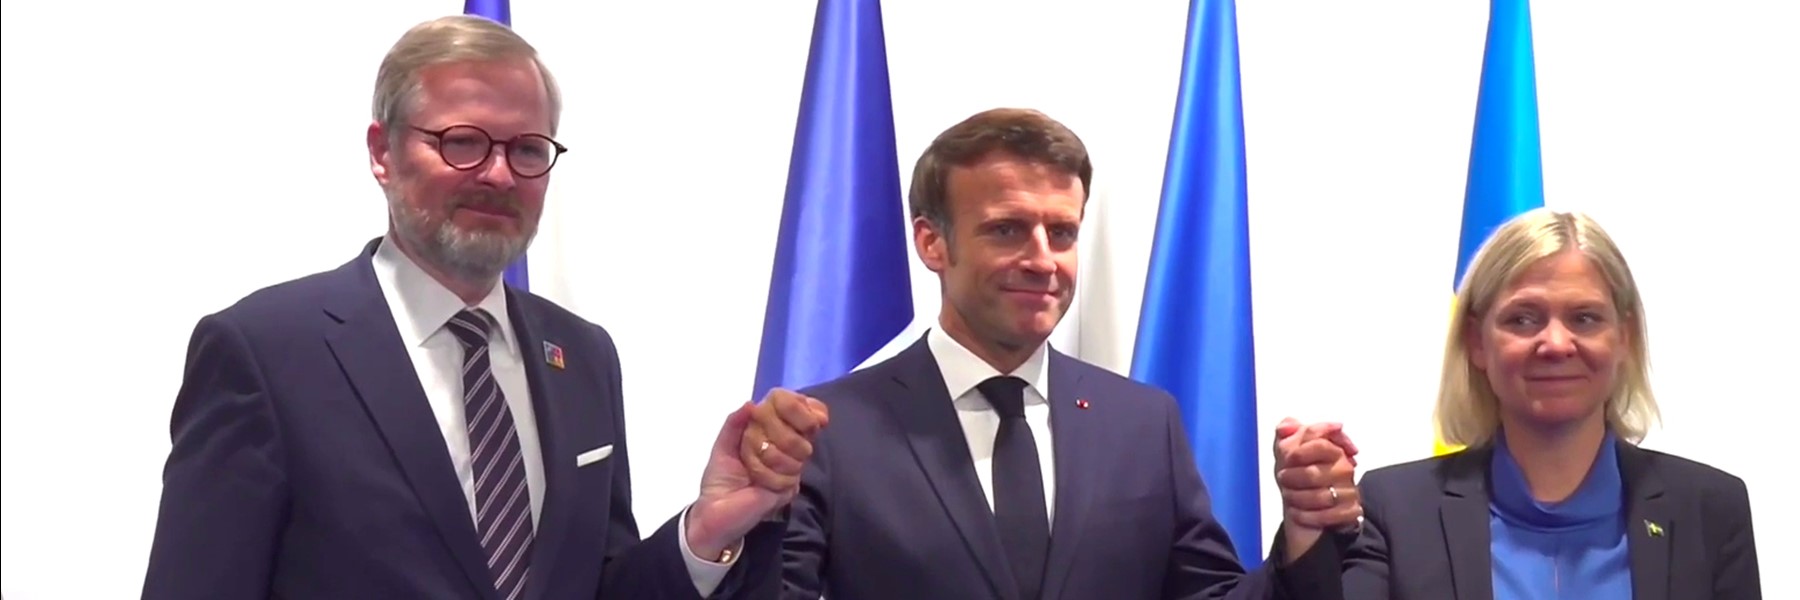 Le Président Emmanuel Macron avec le Premier ministre de la République tchèque et la Première ministre de la Suède. Crédit: Présidence de la République